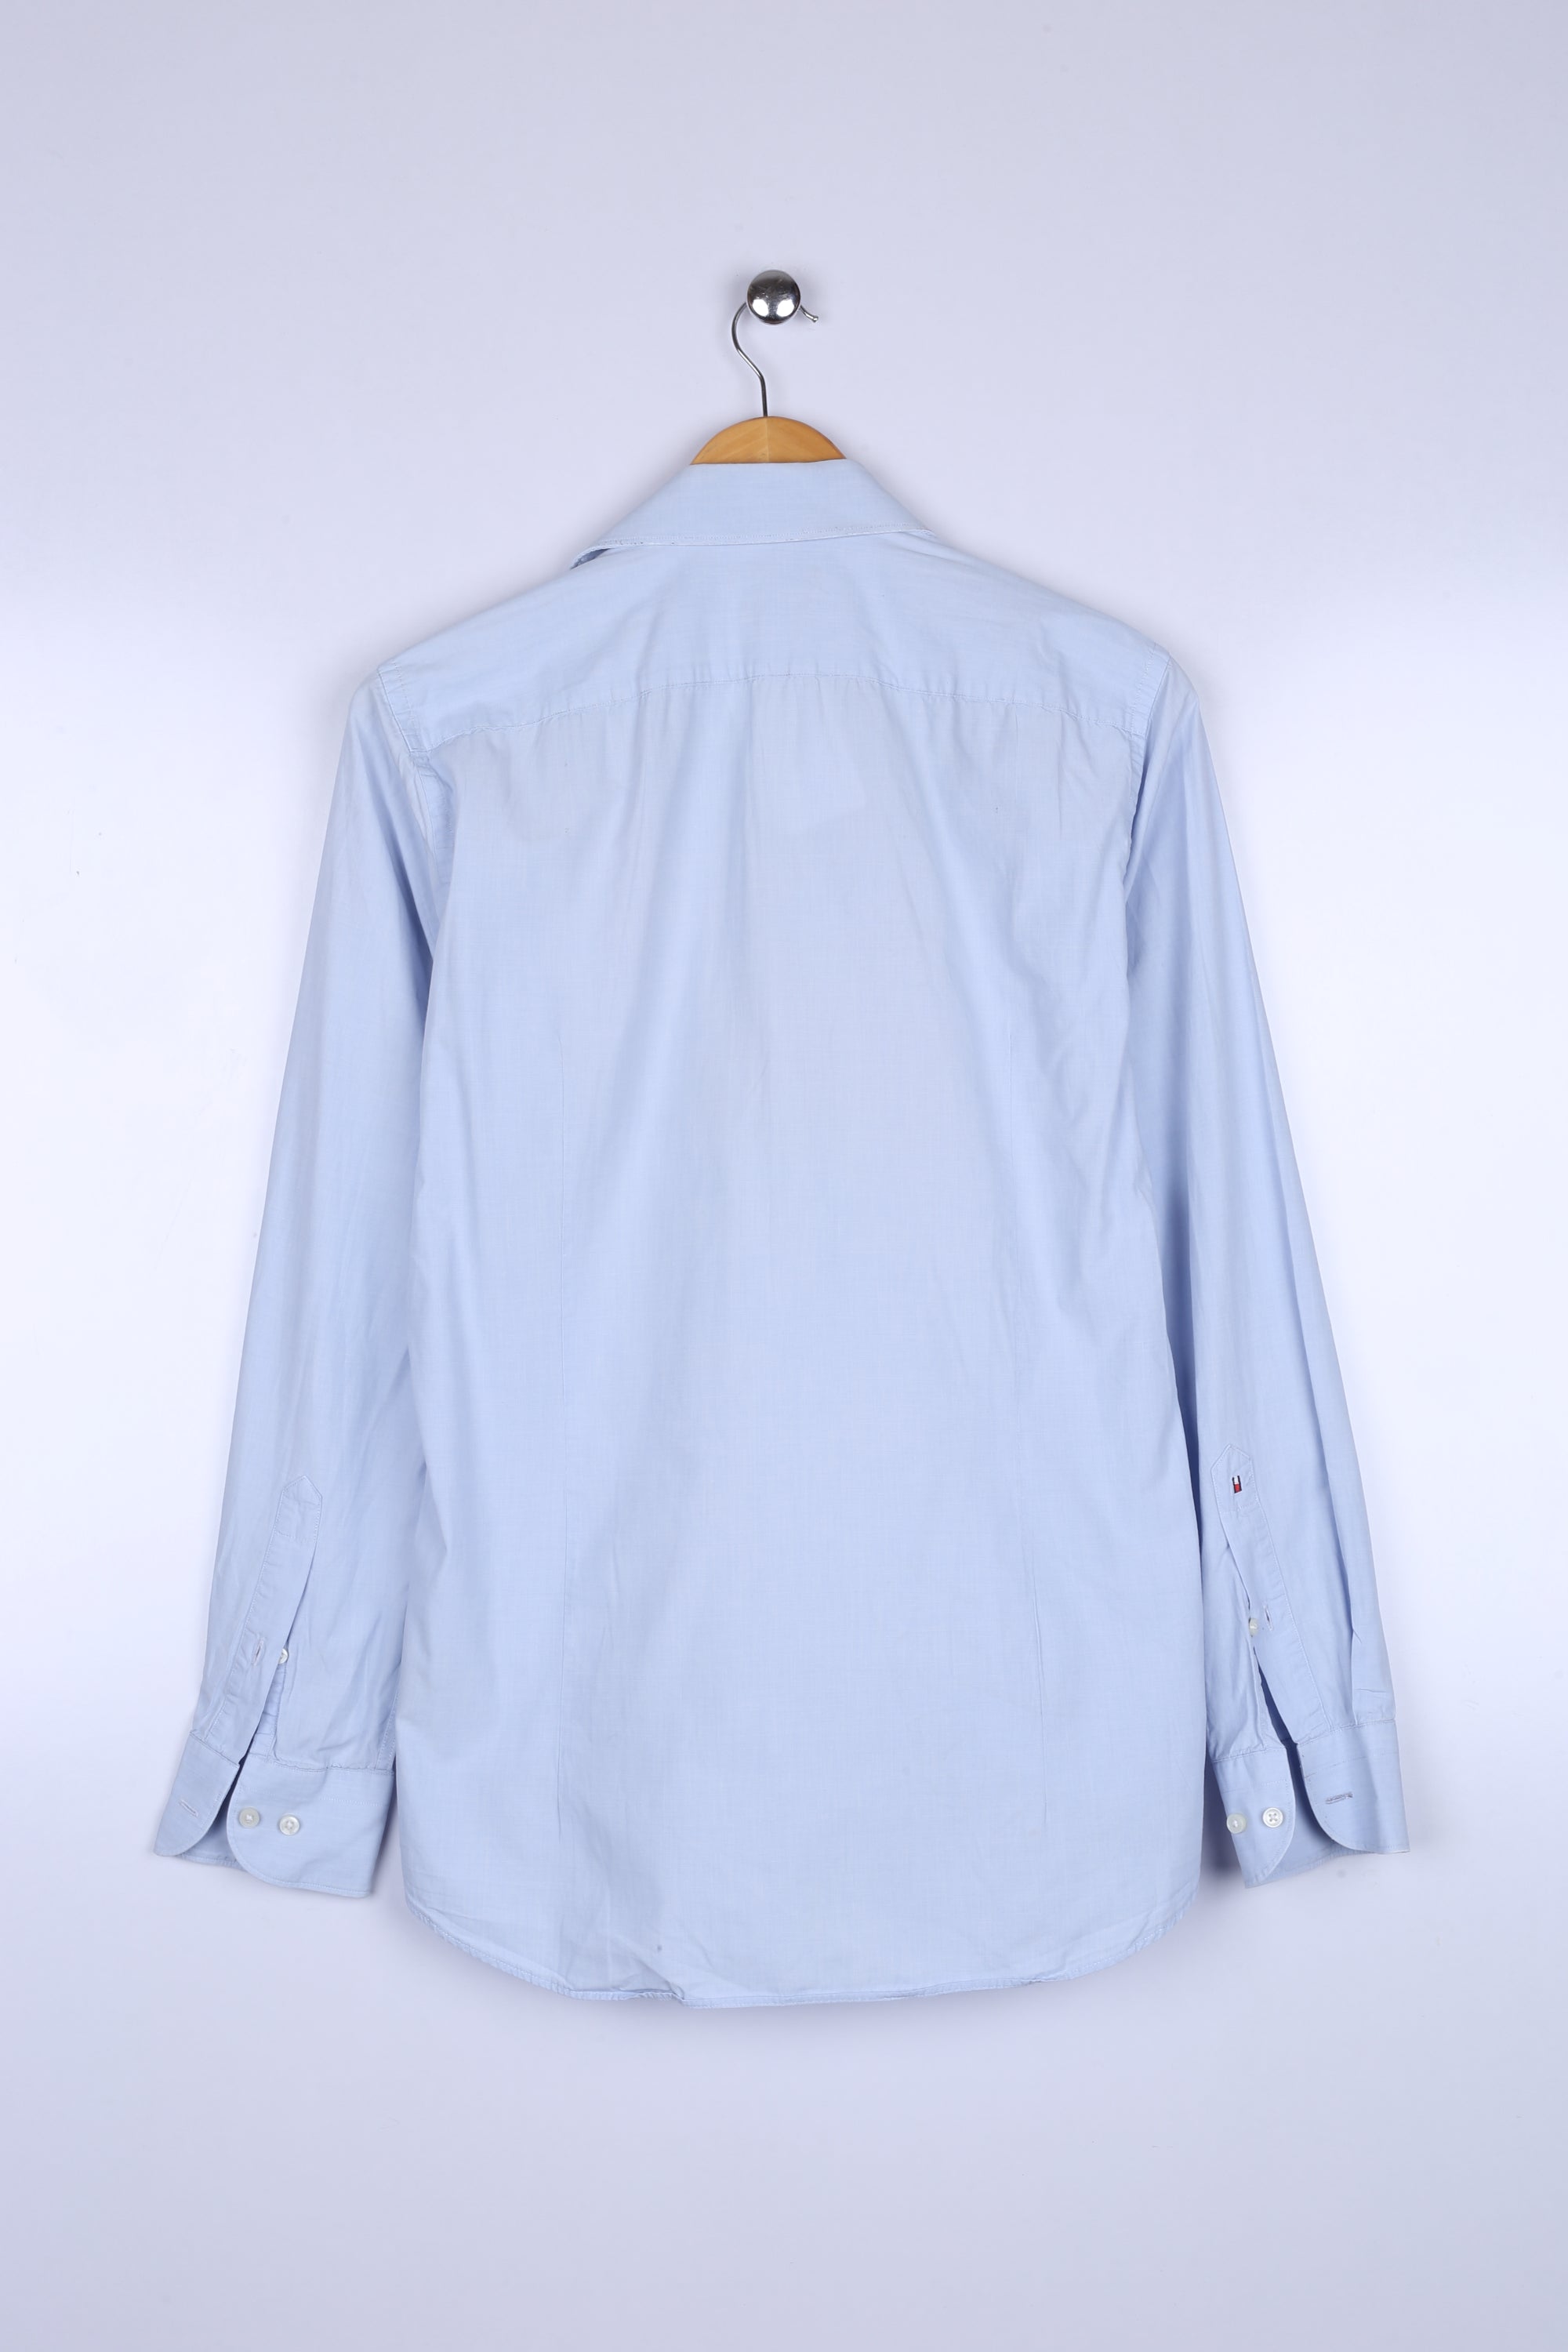 Vintage Tommy Hilfiger Shirt Sky Blue